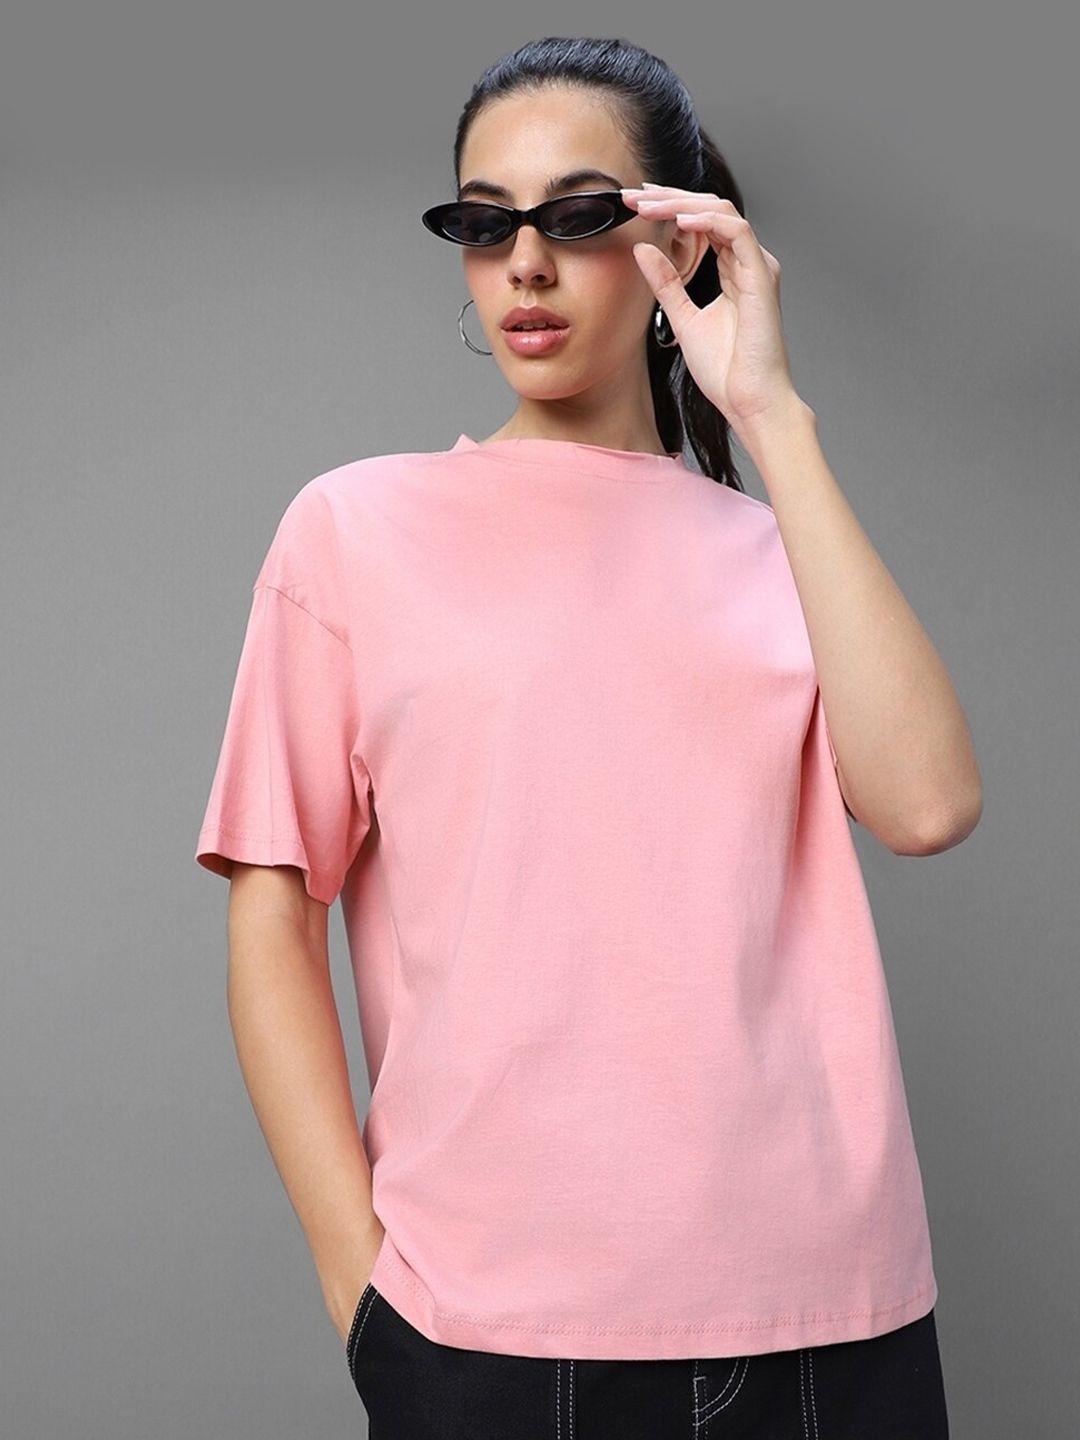 bewakoof-women-pink-t-shirt